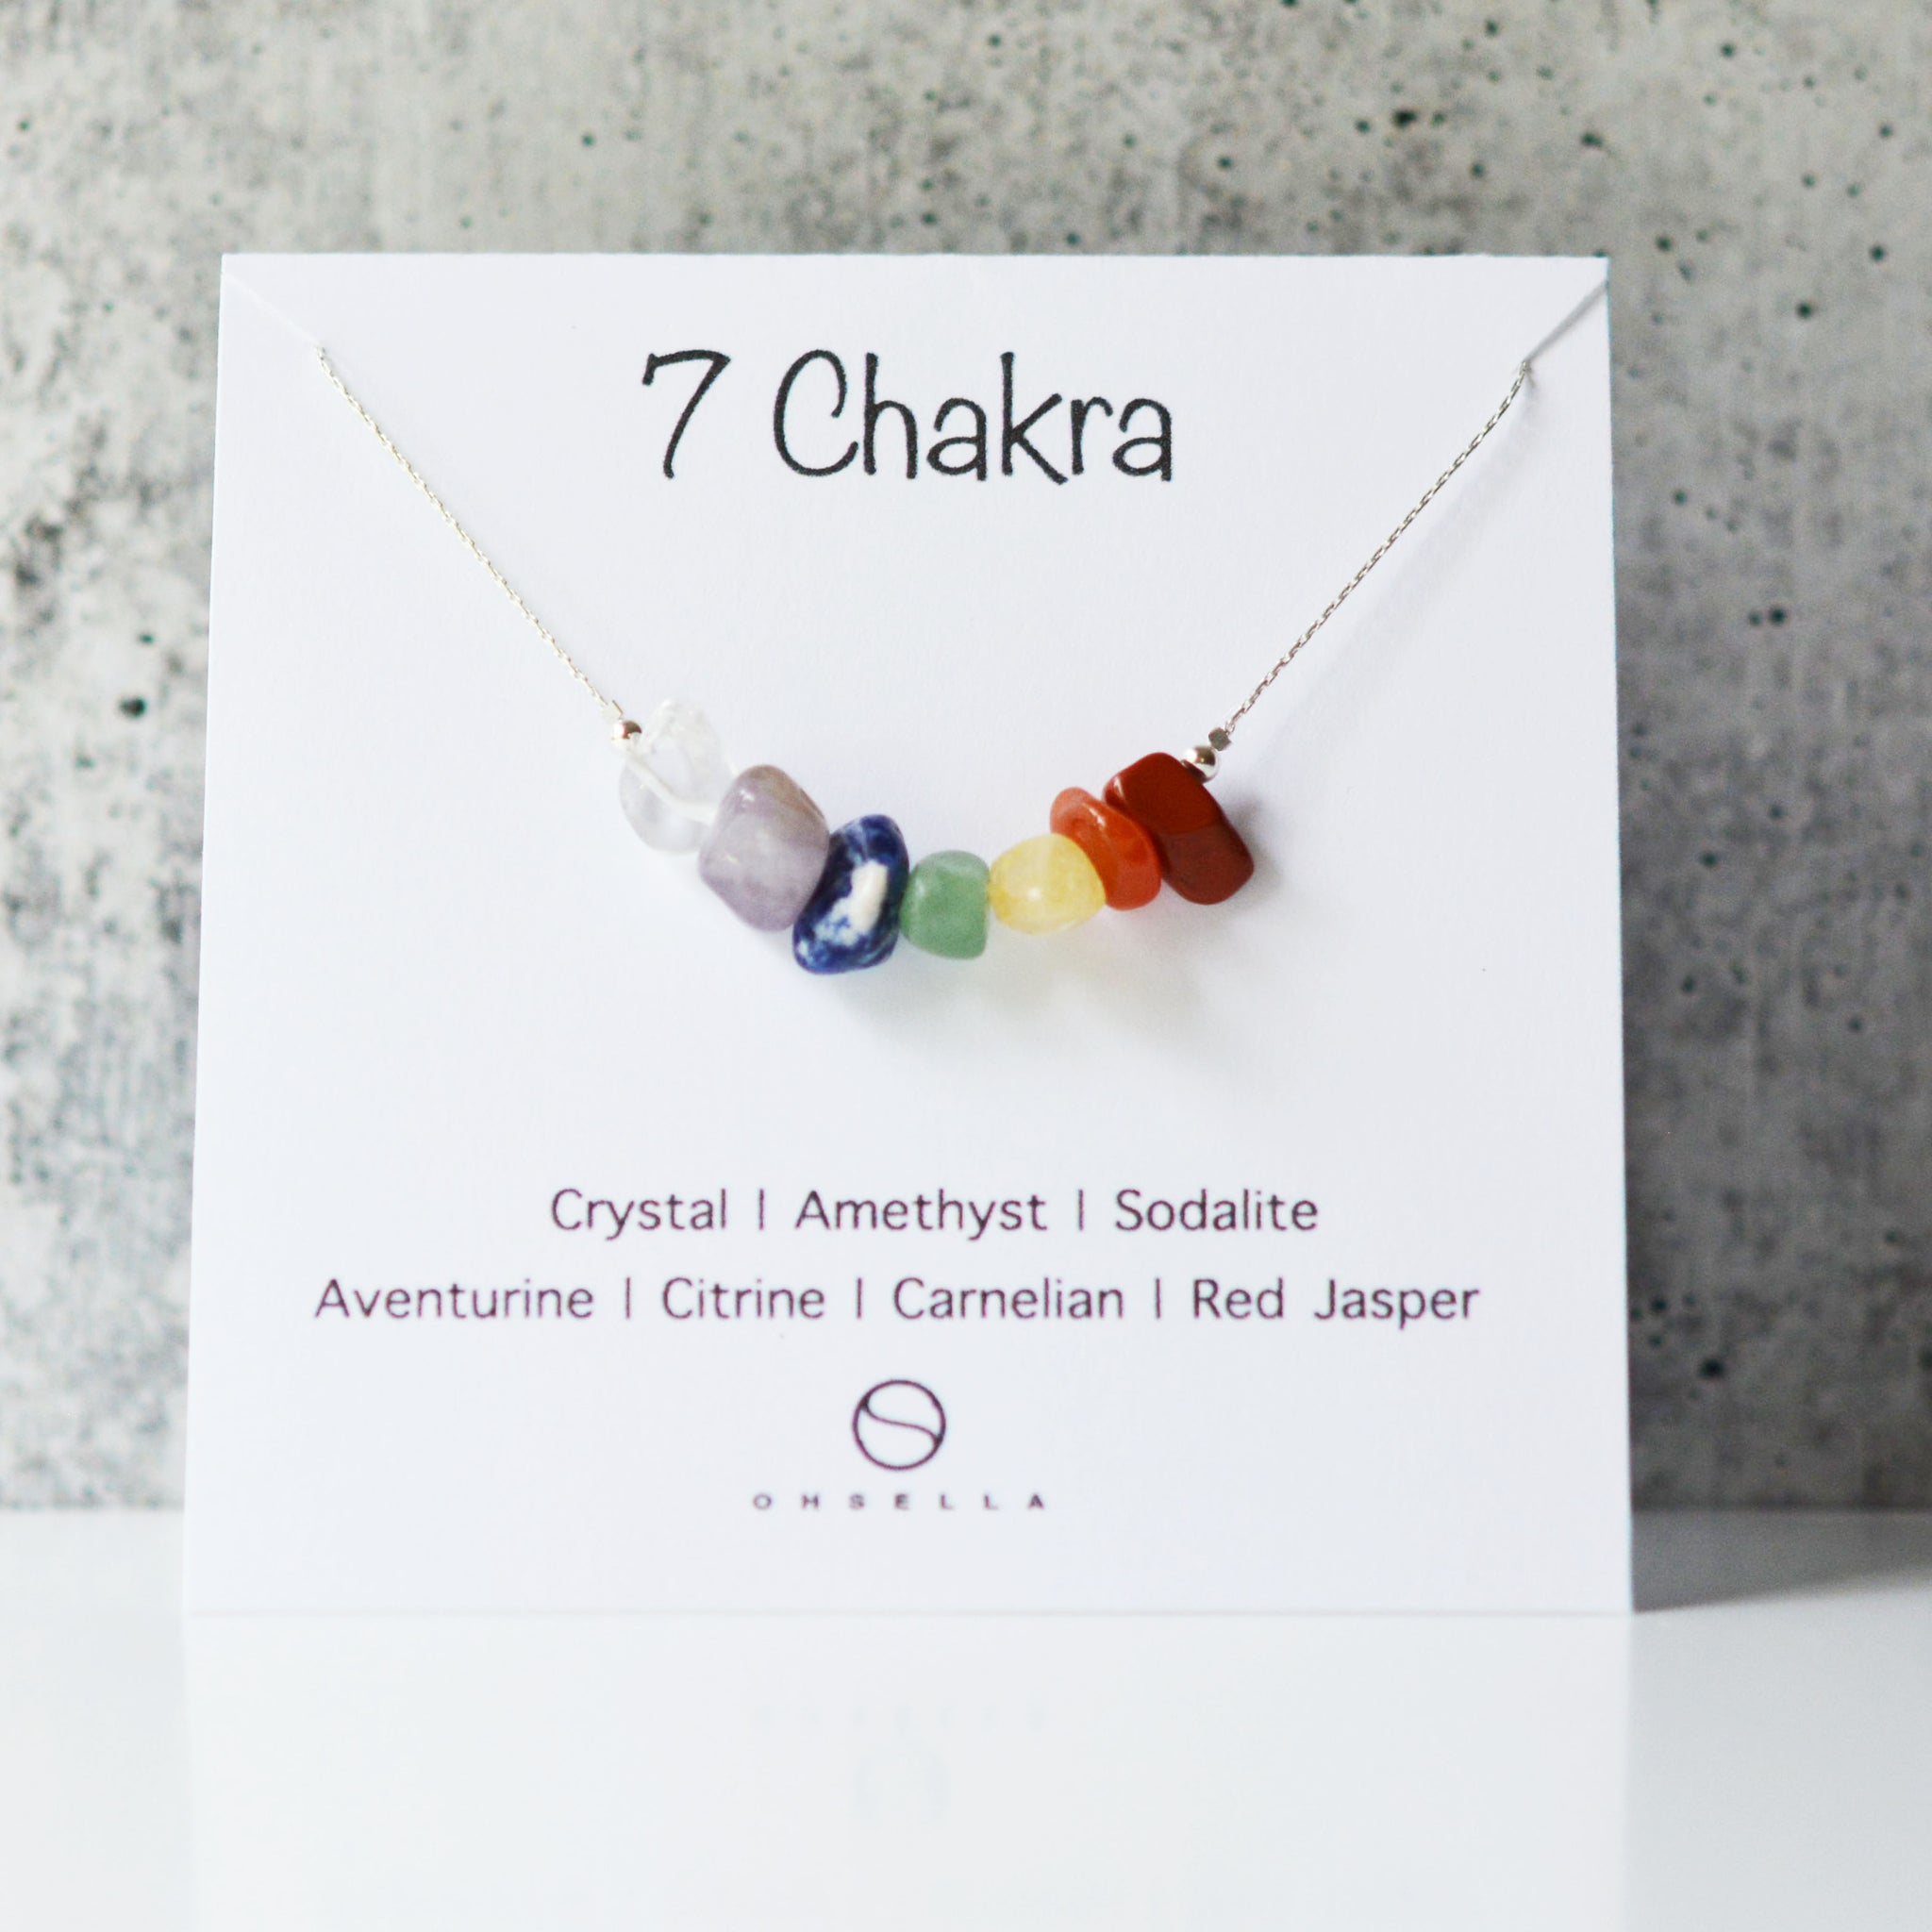 7 Gemstones Chakra Necklace - Ultimate Energy